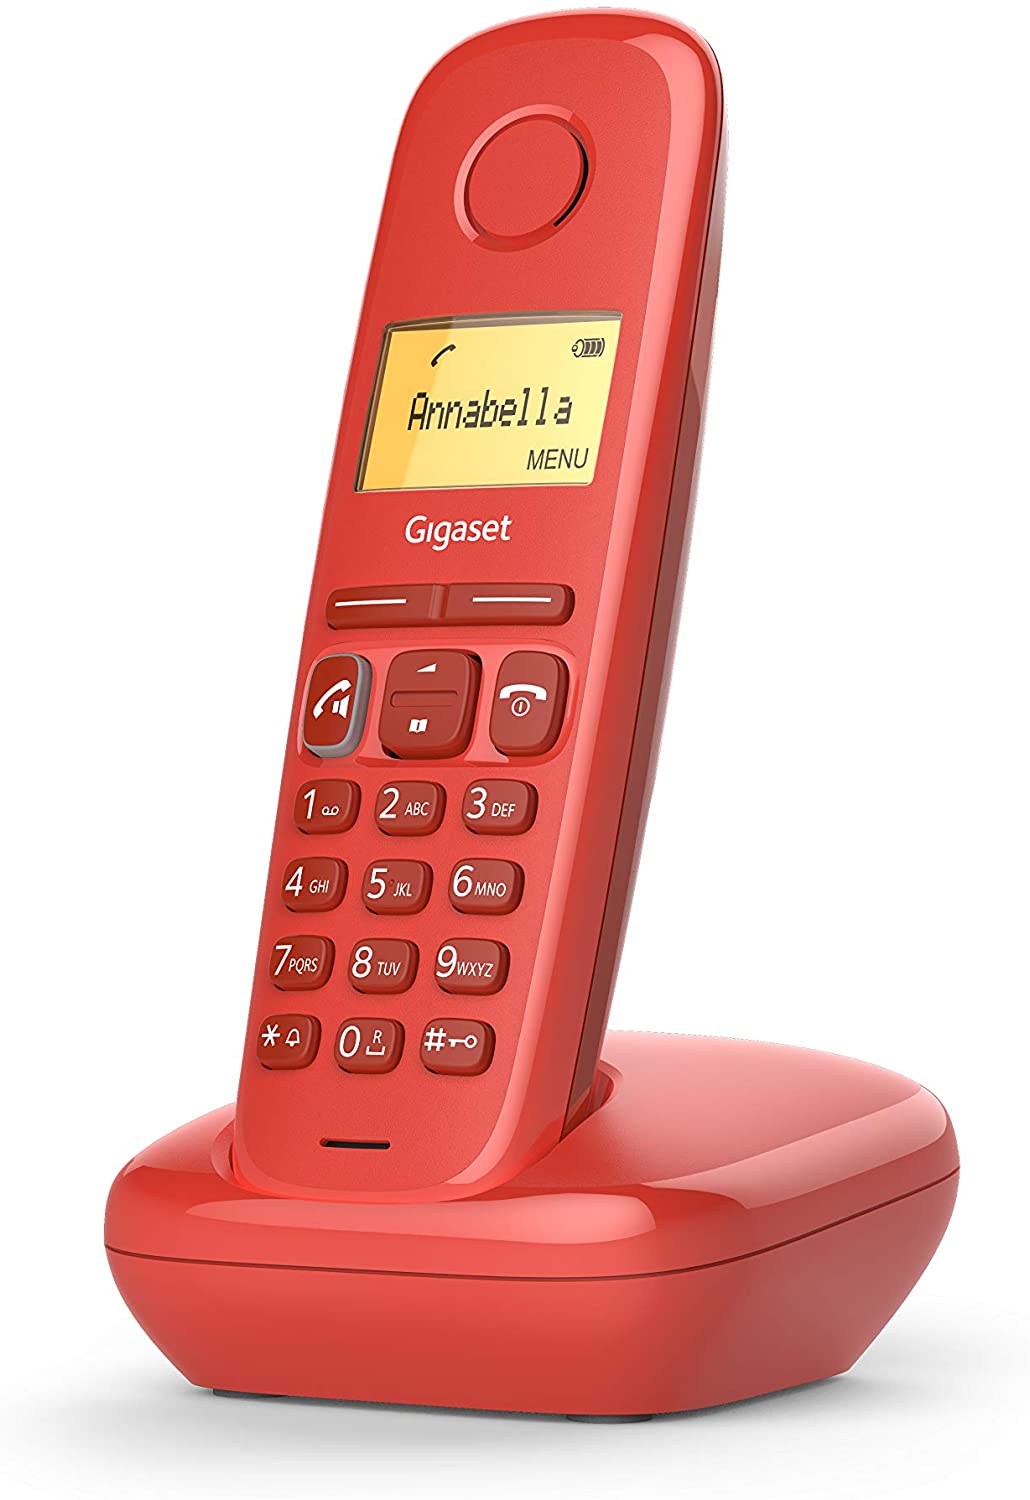 Téléphone sans fil Gigaset A270 Dect avec identification de l'appelant - Mains libres - Contrôle du volume